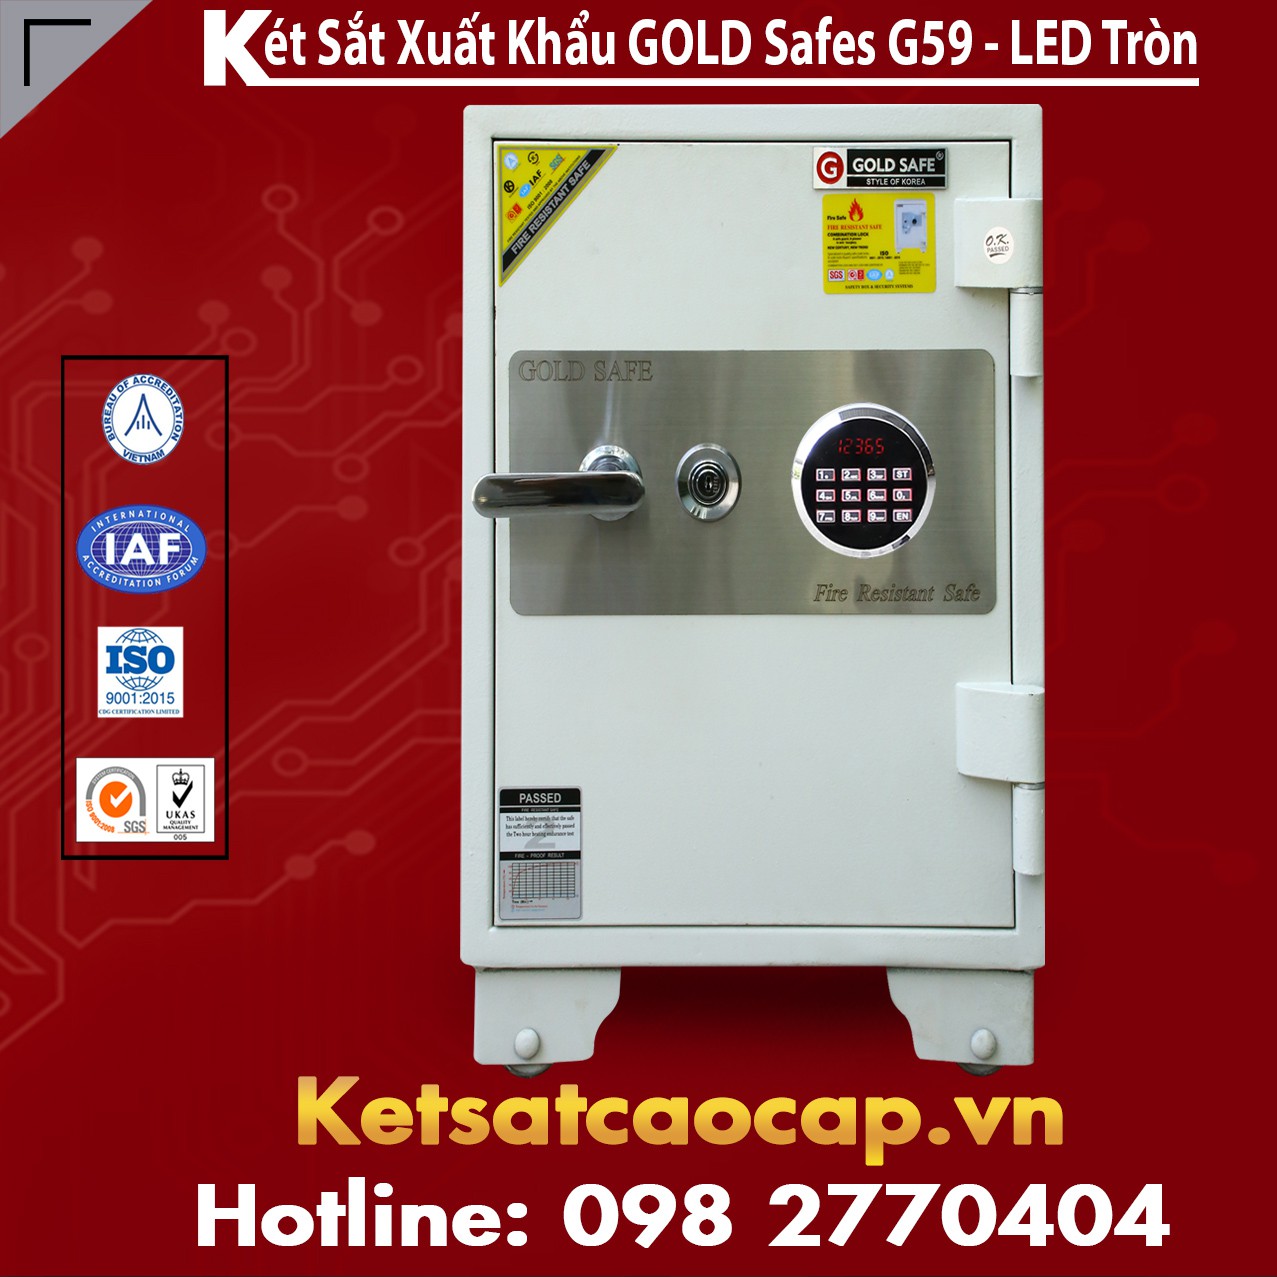 Két Sắt Phát Lộc GOLD SAFES G590 LED Tròn